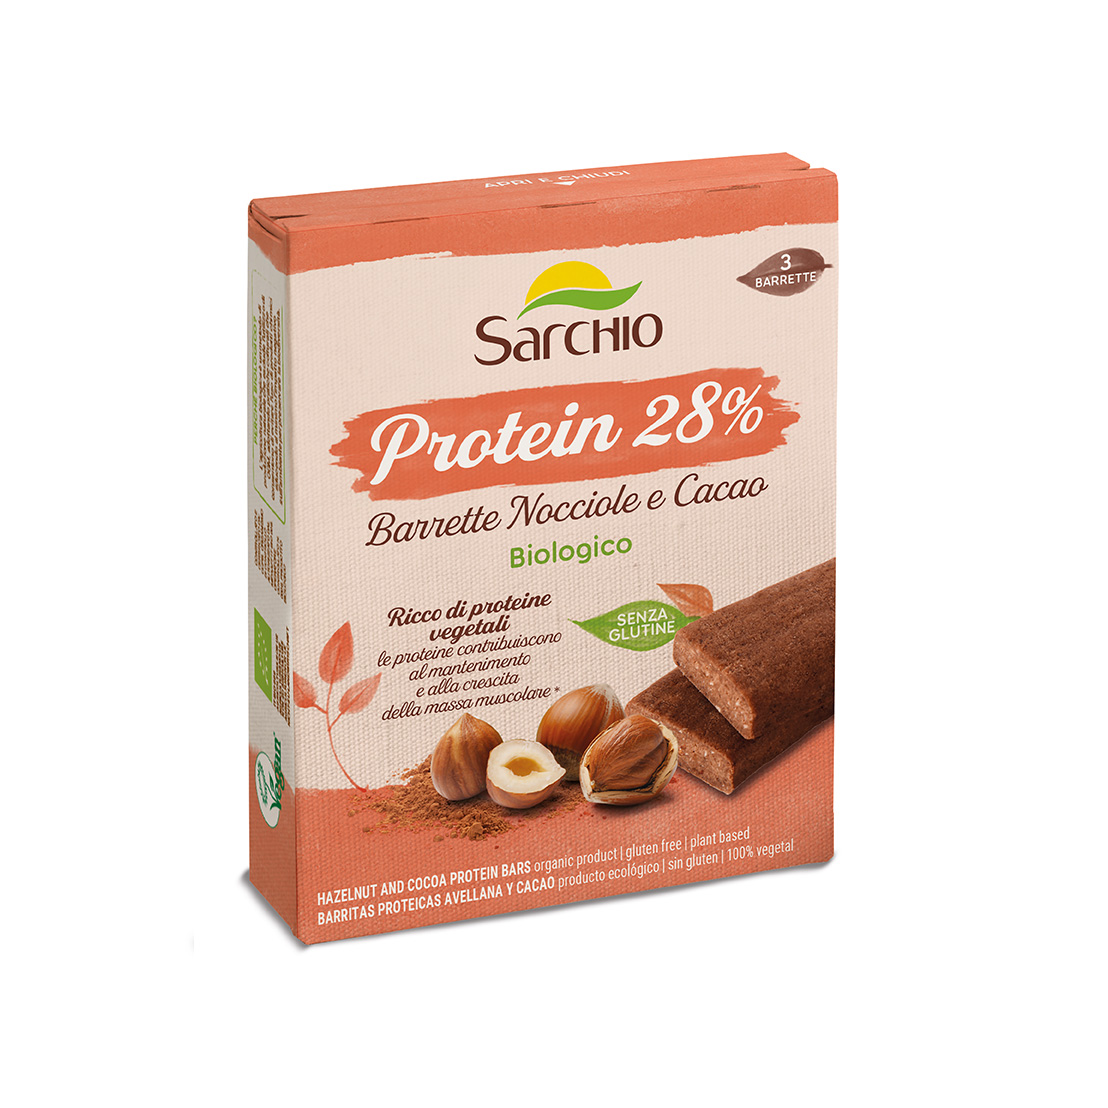 Barrette Protein <br> Nocciole e Cacao